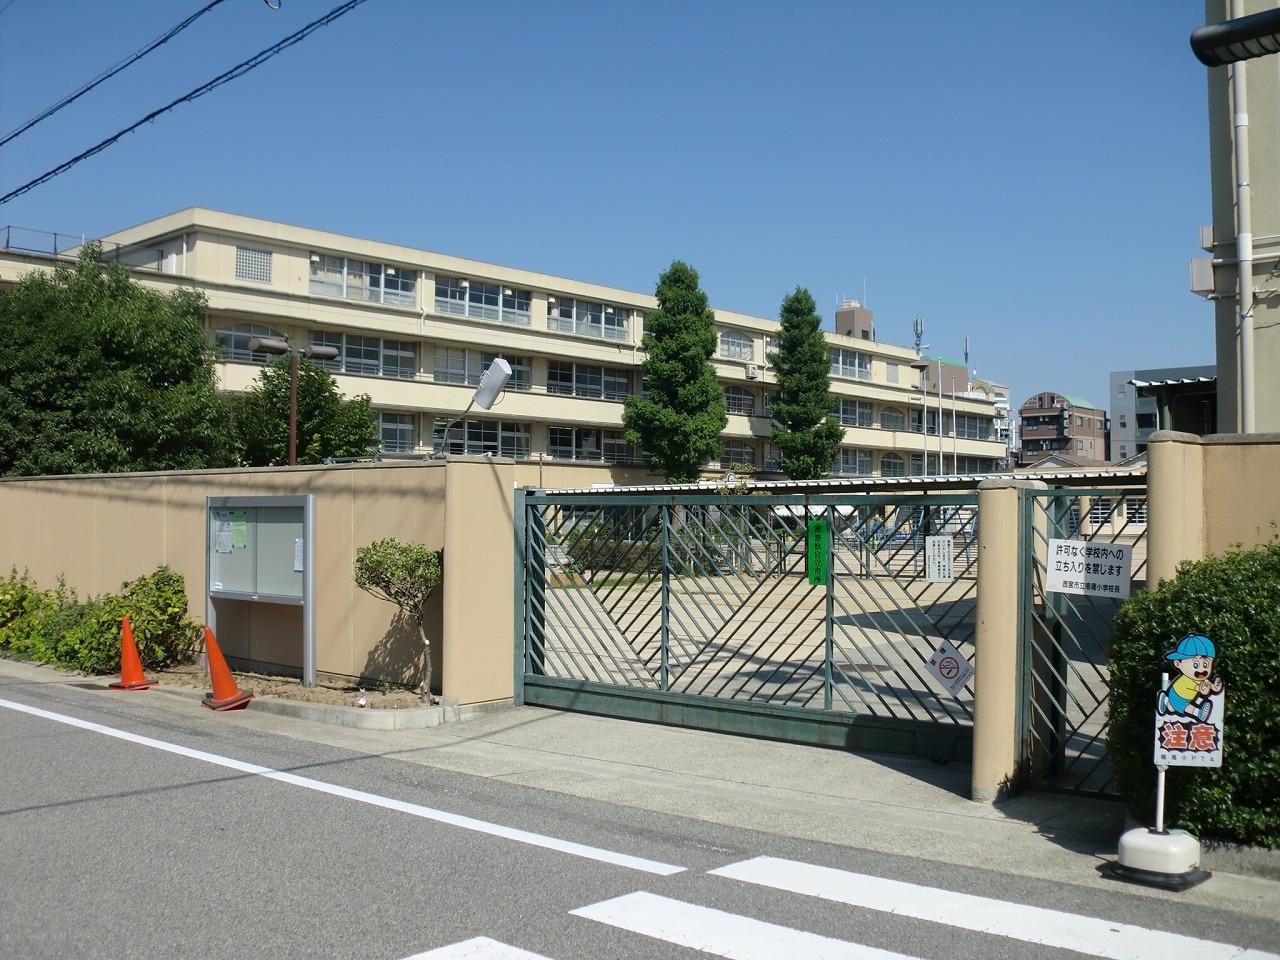 Primary school. 648m to Nishinomiya Municipal Naruo elementary school (elementary school)